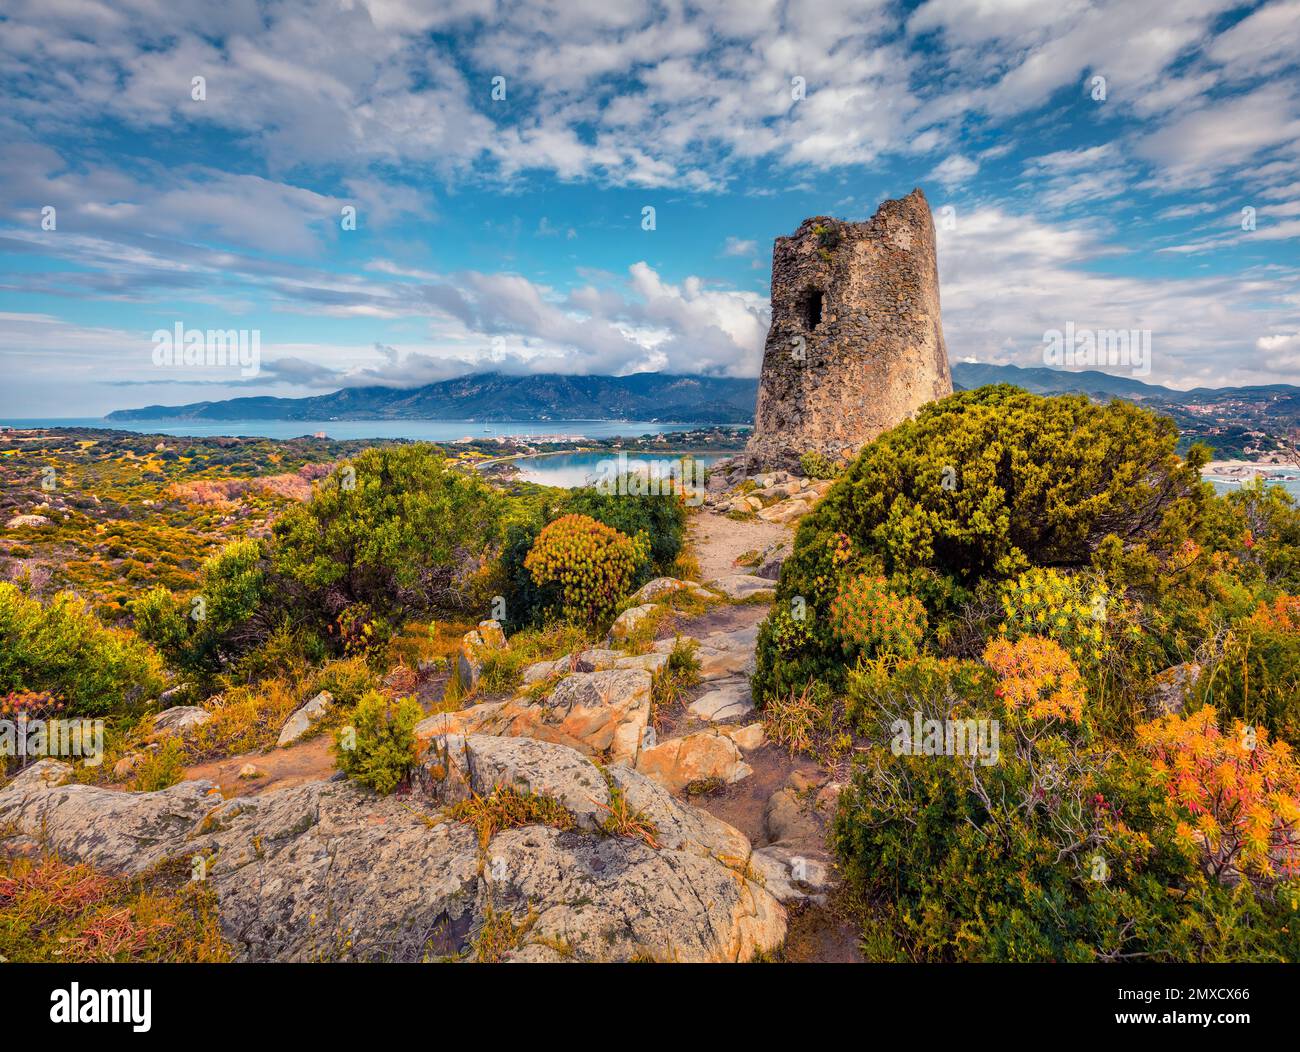 Landschaftsfotografie. Wundervolle Sommerszene des Torre di Porto Giunco Turms am Kap Carbonara. Dramatischer Blick am Vormittag auf die Insel Sardinien, Italien, Europa Stockfoto